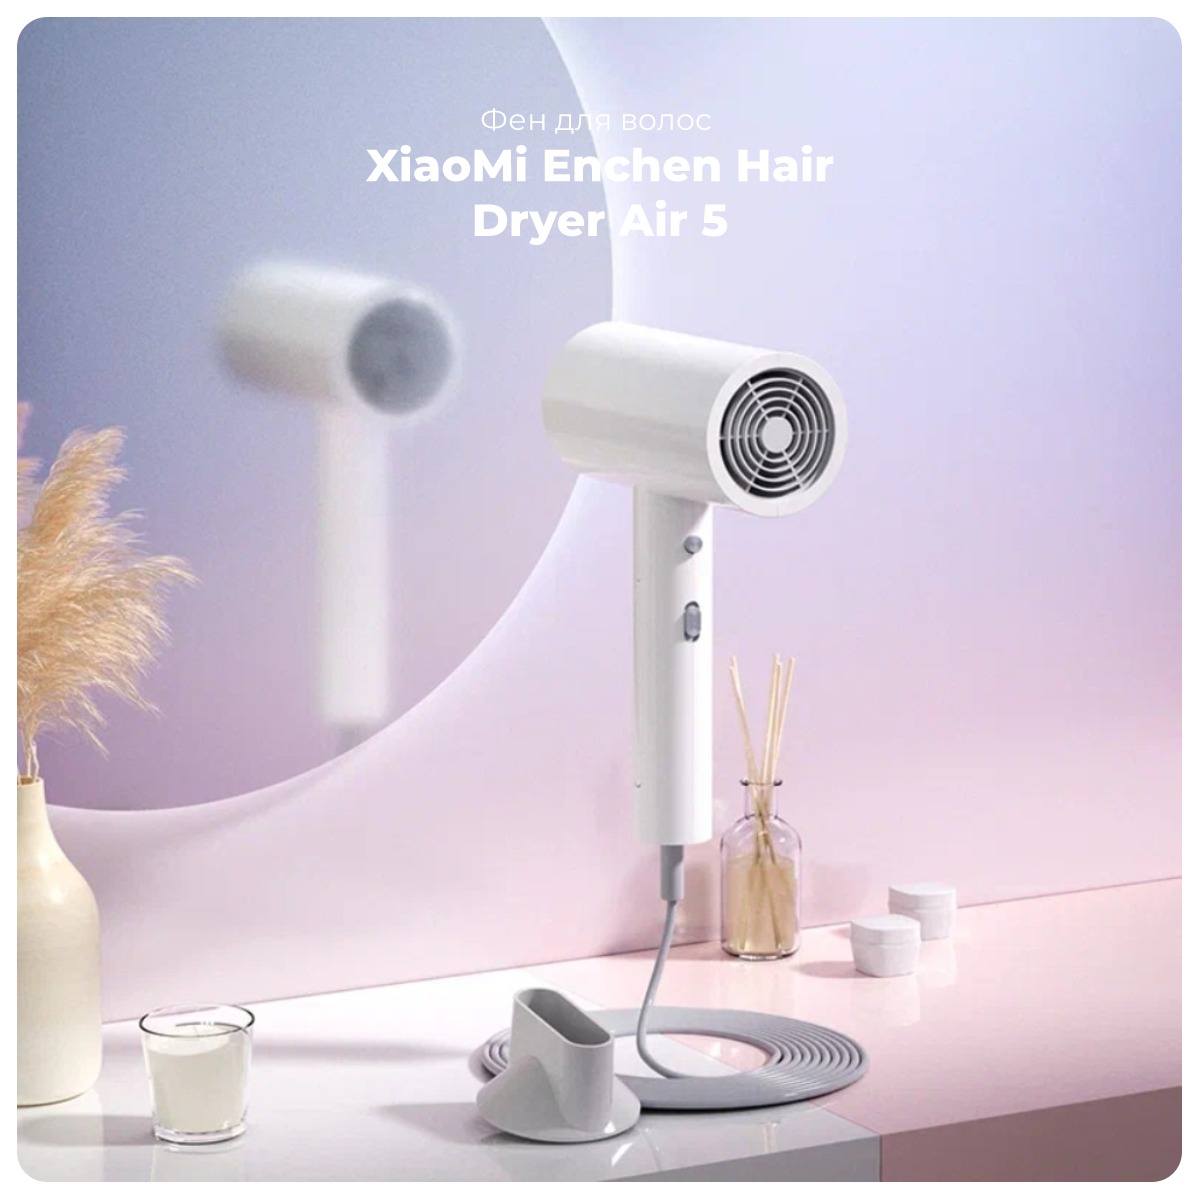 XiaoMi-Enchen-Hair-Dryer-Air-5-01